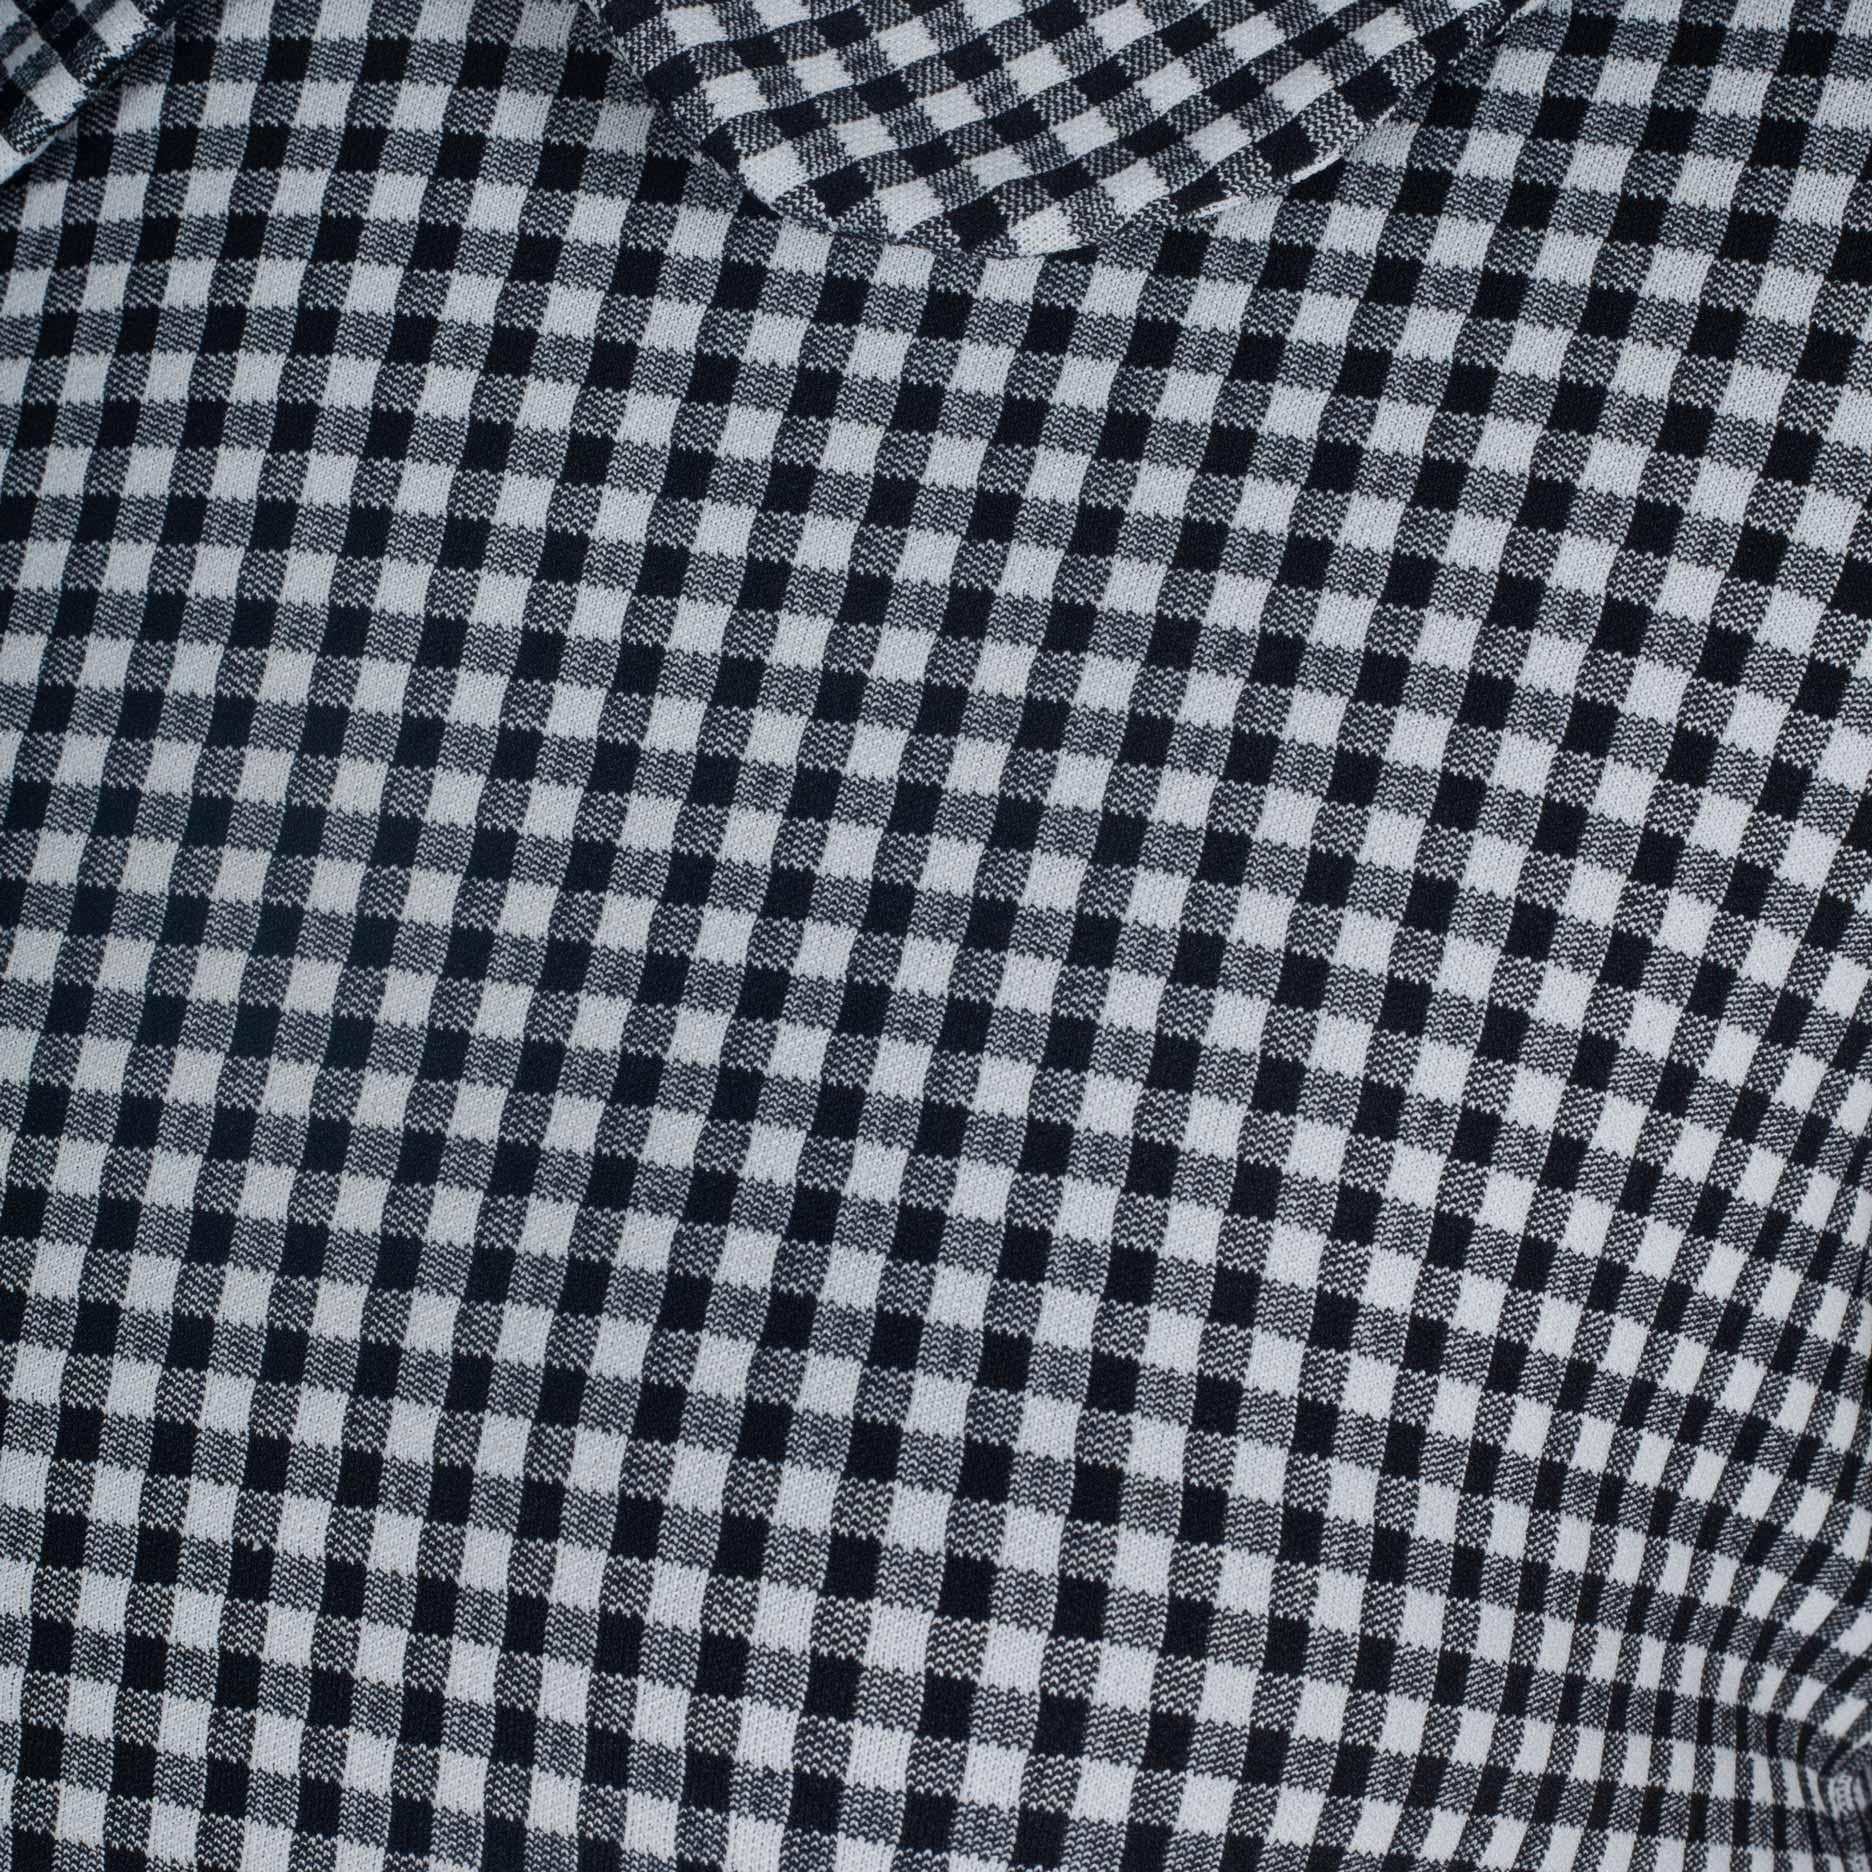  Comme des Garçons Checkered T-Shirt with Collar, 1996 2